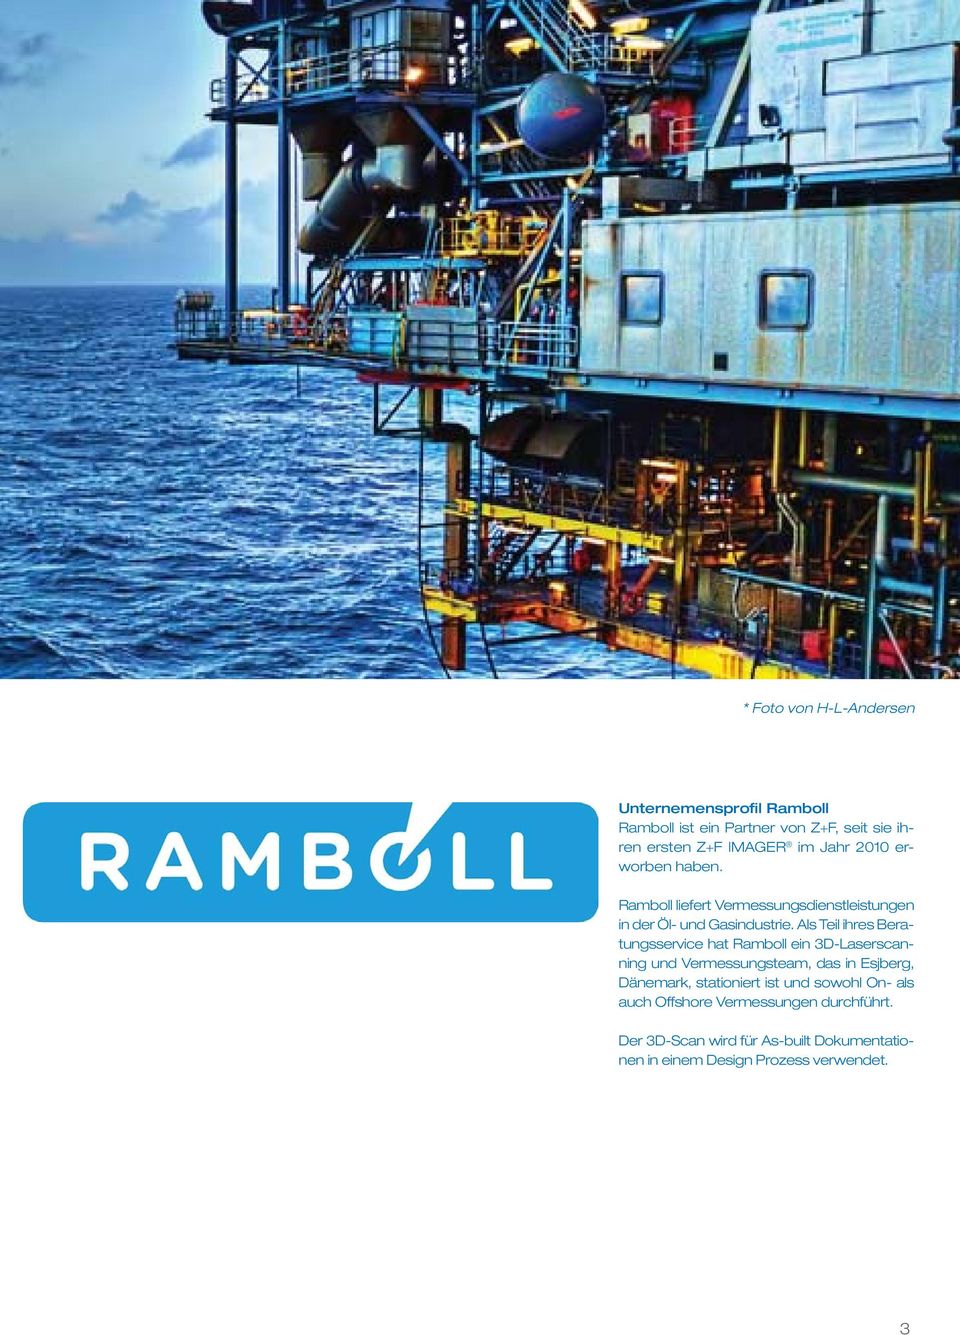 Als Teil ihres Beratungsservice hat Ramboll ein 3D-Laserscanning und Vermessungsteam, das in Esjberg, Dänemark,